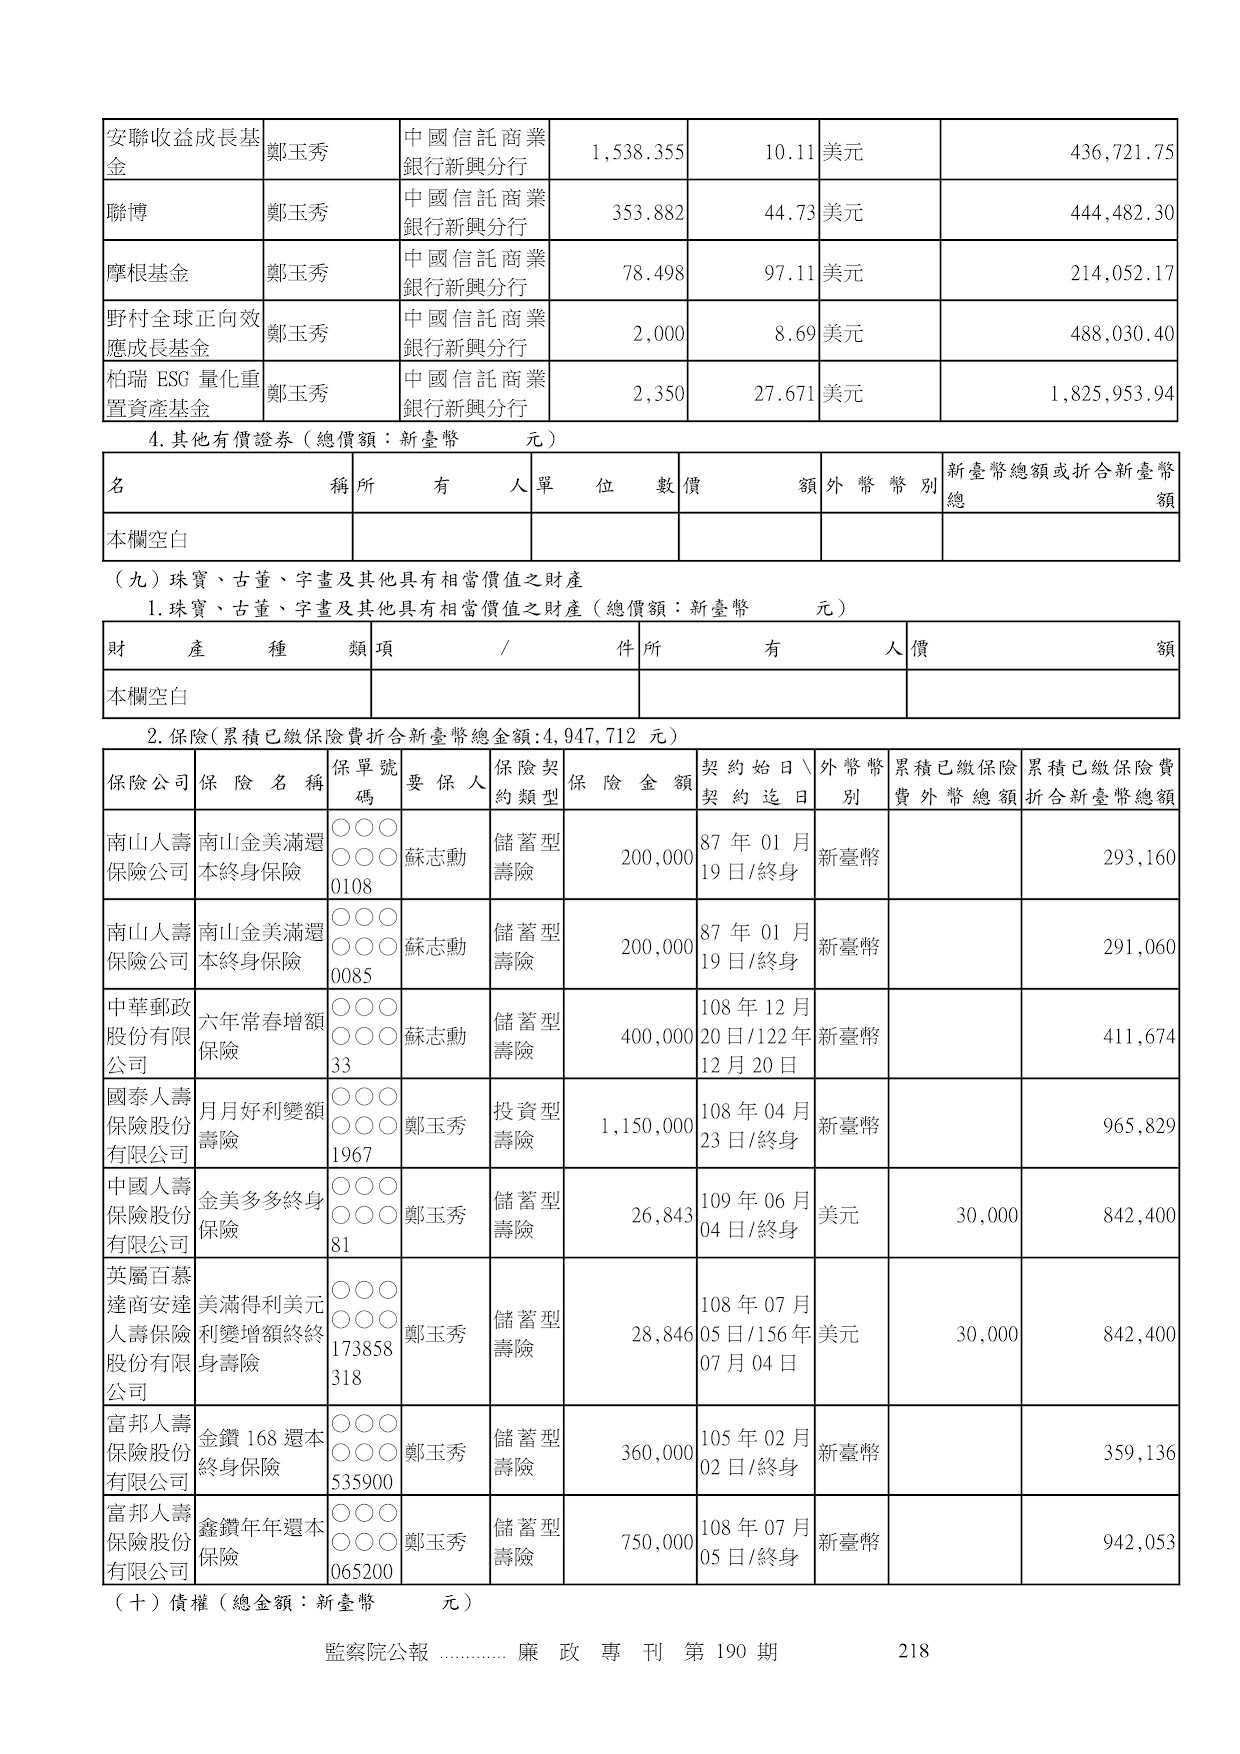 蘇志勳-公職人員財產申報資料-廉政專刊第190期